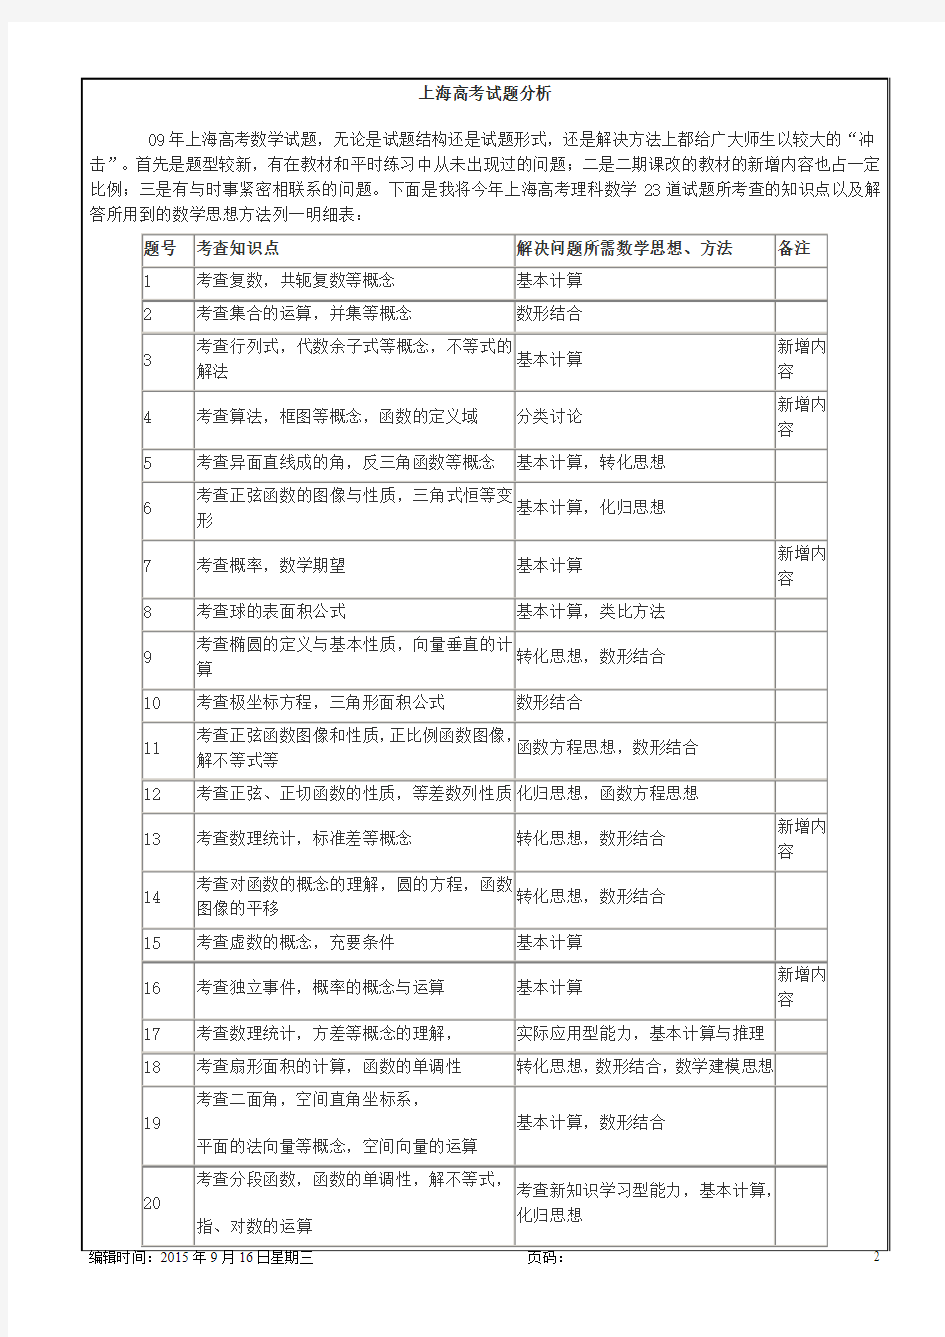 上海高考考试试题分析